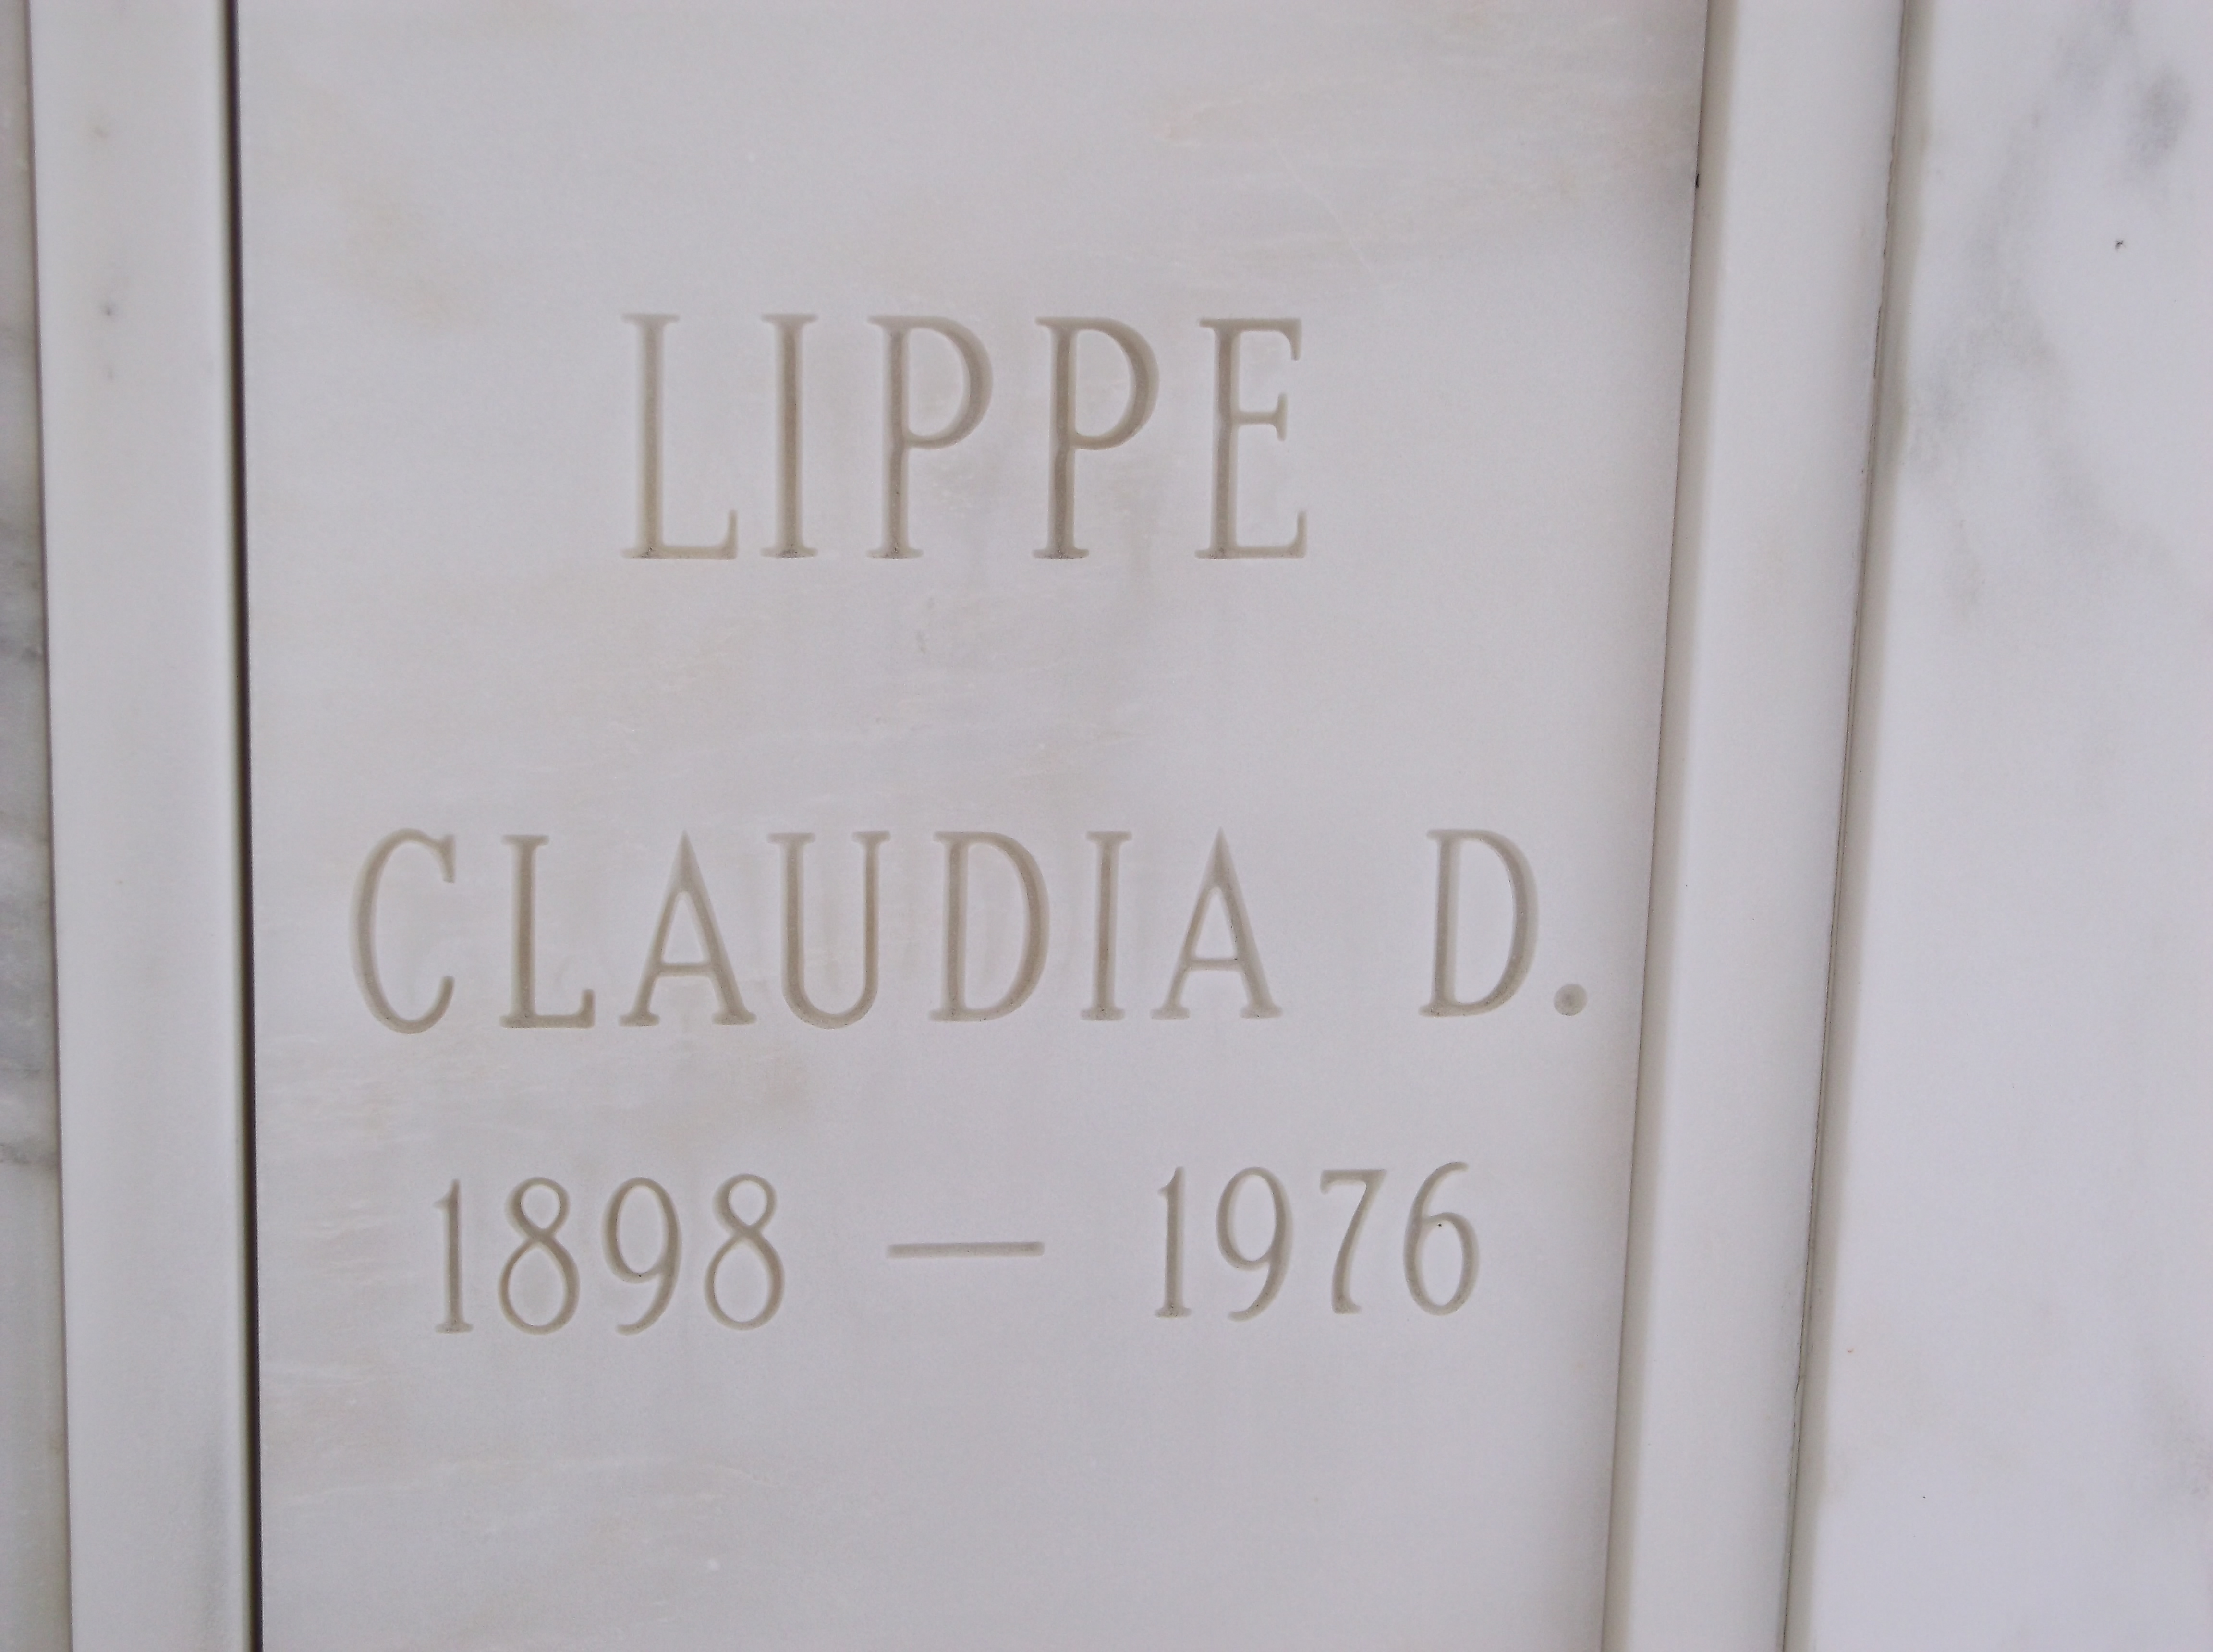 Claudia D Lippe